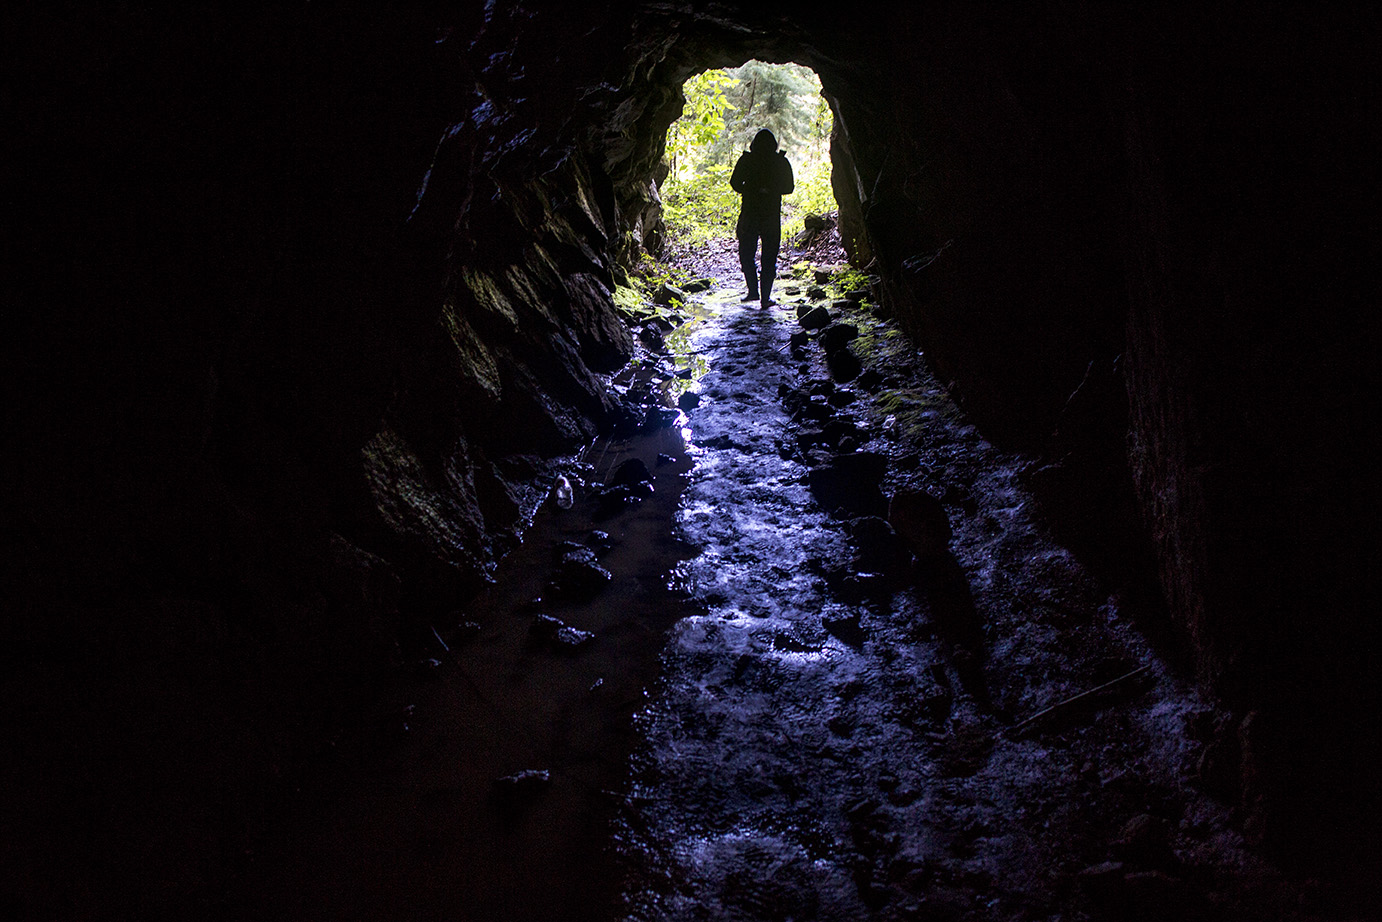 Un miembro del equipo de sondeo sale de un túnel en la montaña de San Rafael Las Flores. Simone Dalmasso